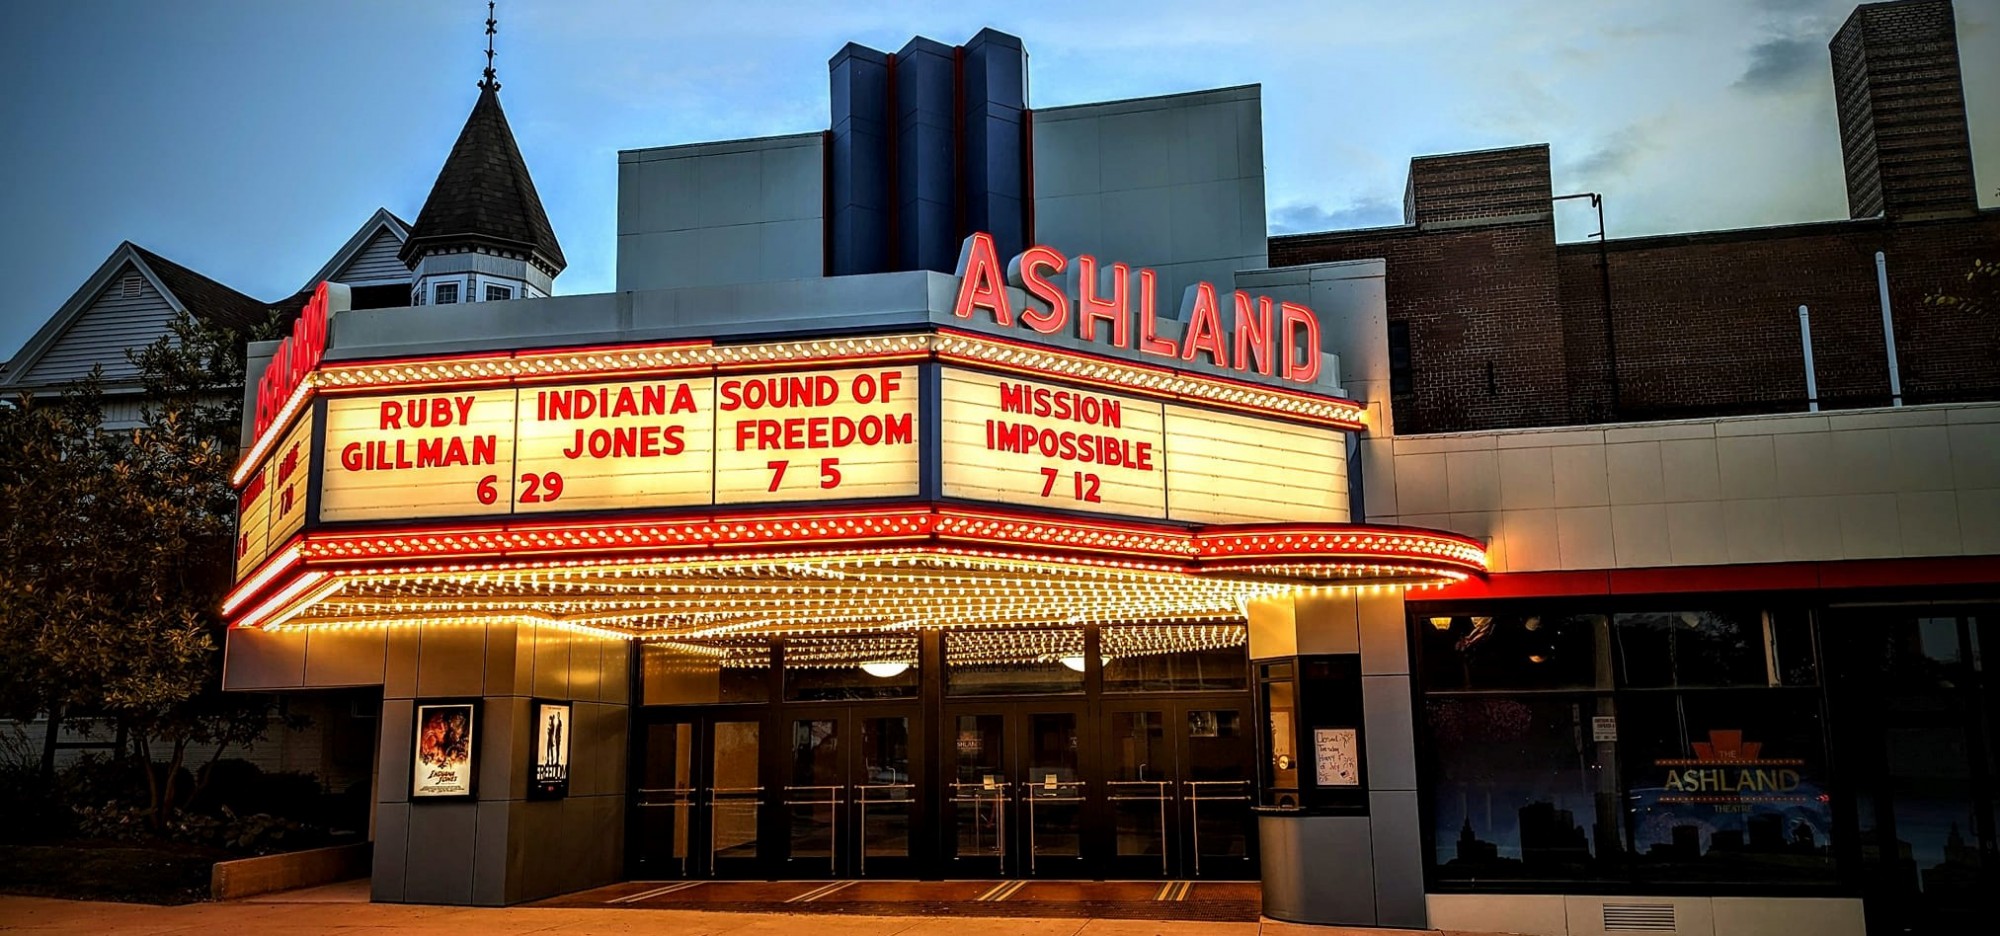 The Ashland Theatre